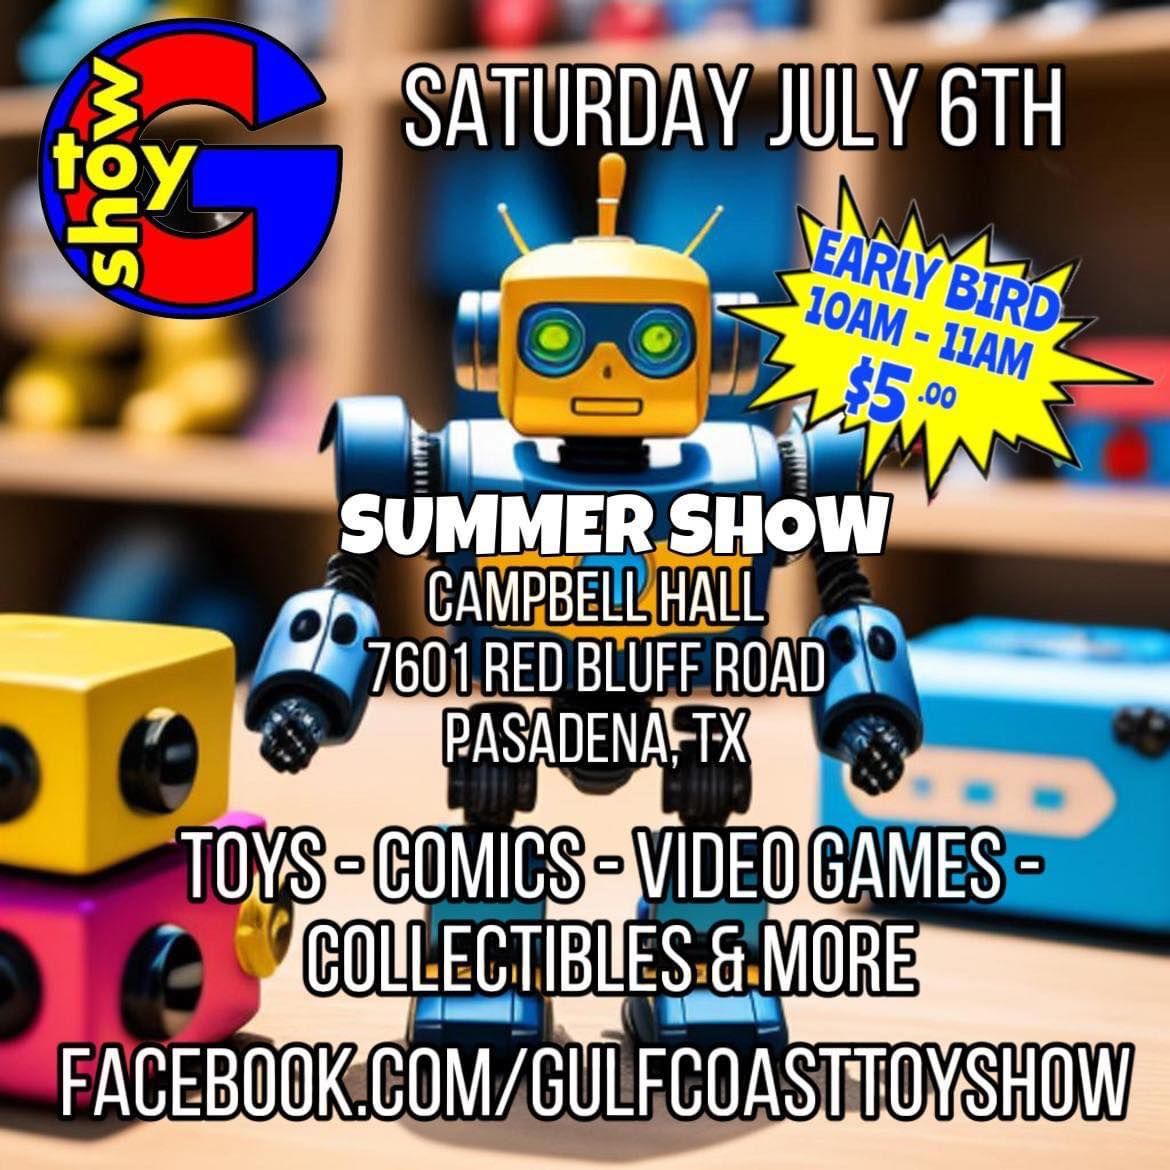 Gulf Coast Toy Show